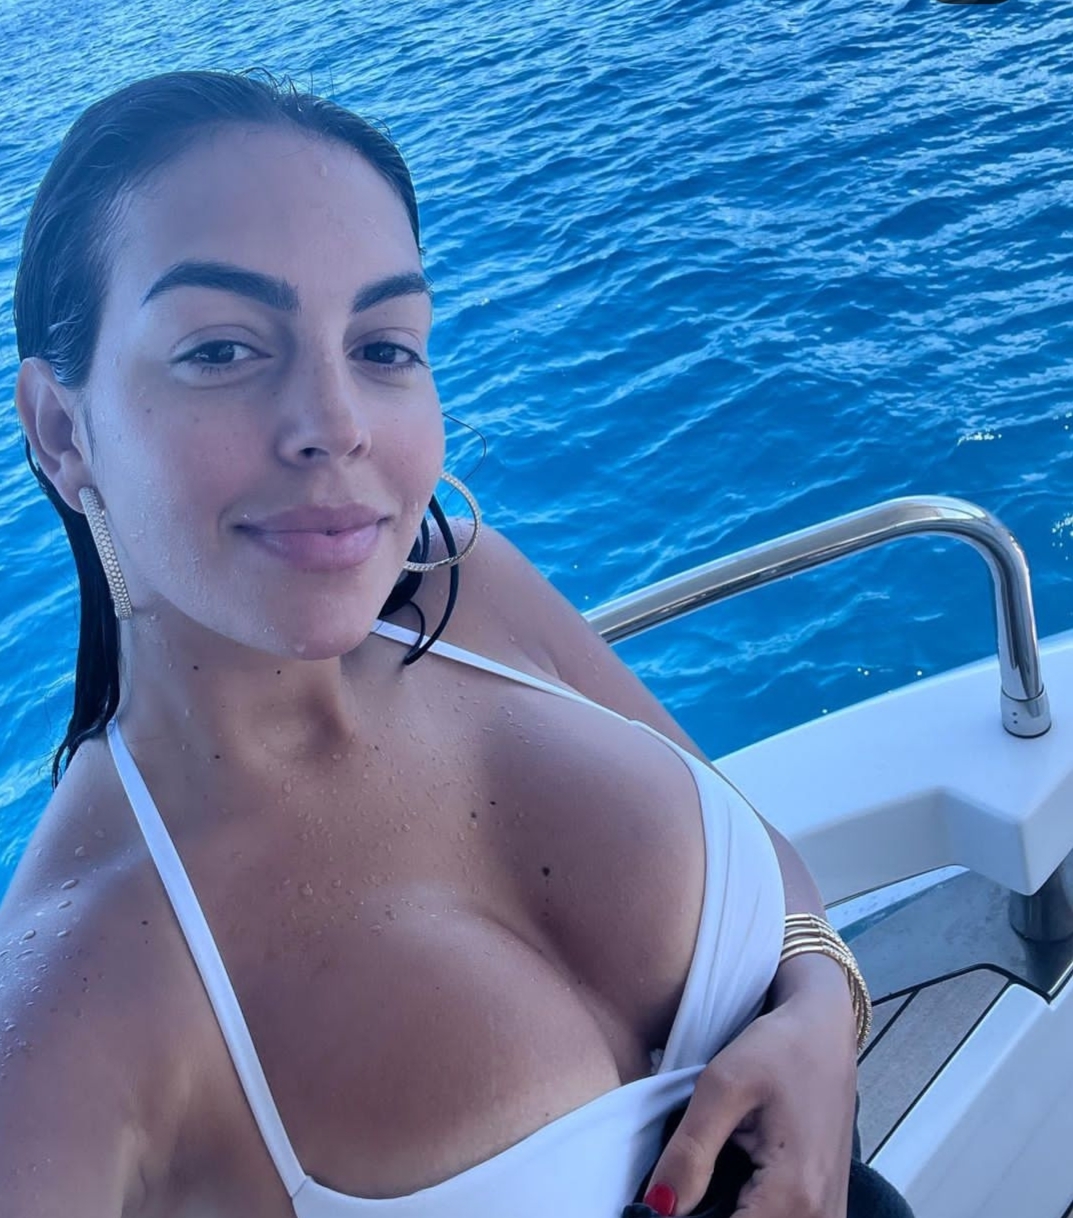 Cristiano Ronaldo's girlfriend, Georgina Rodriguez chilling on a boat